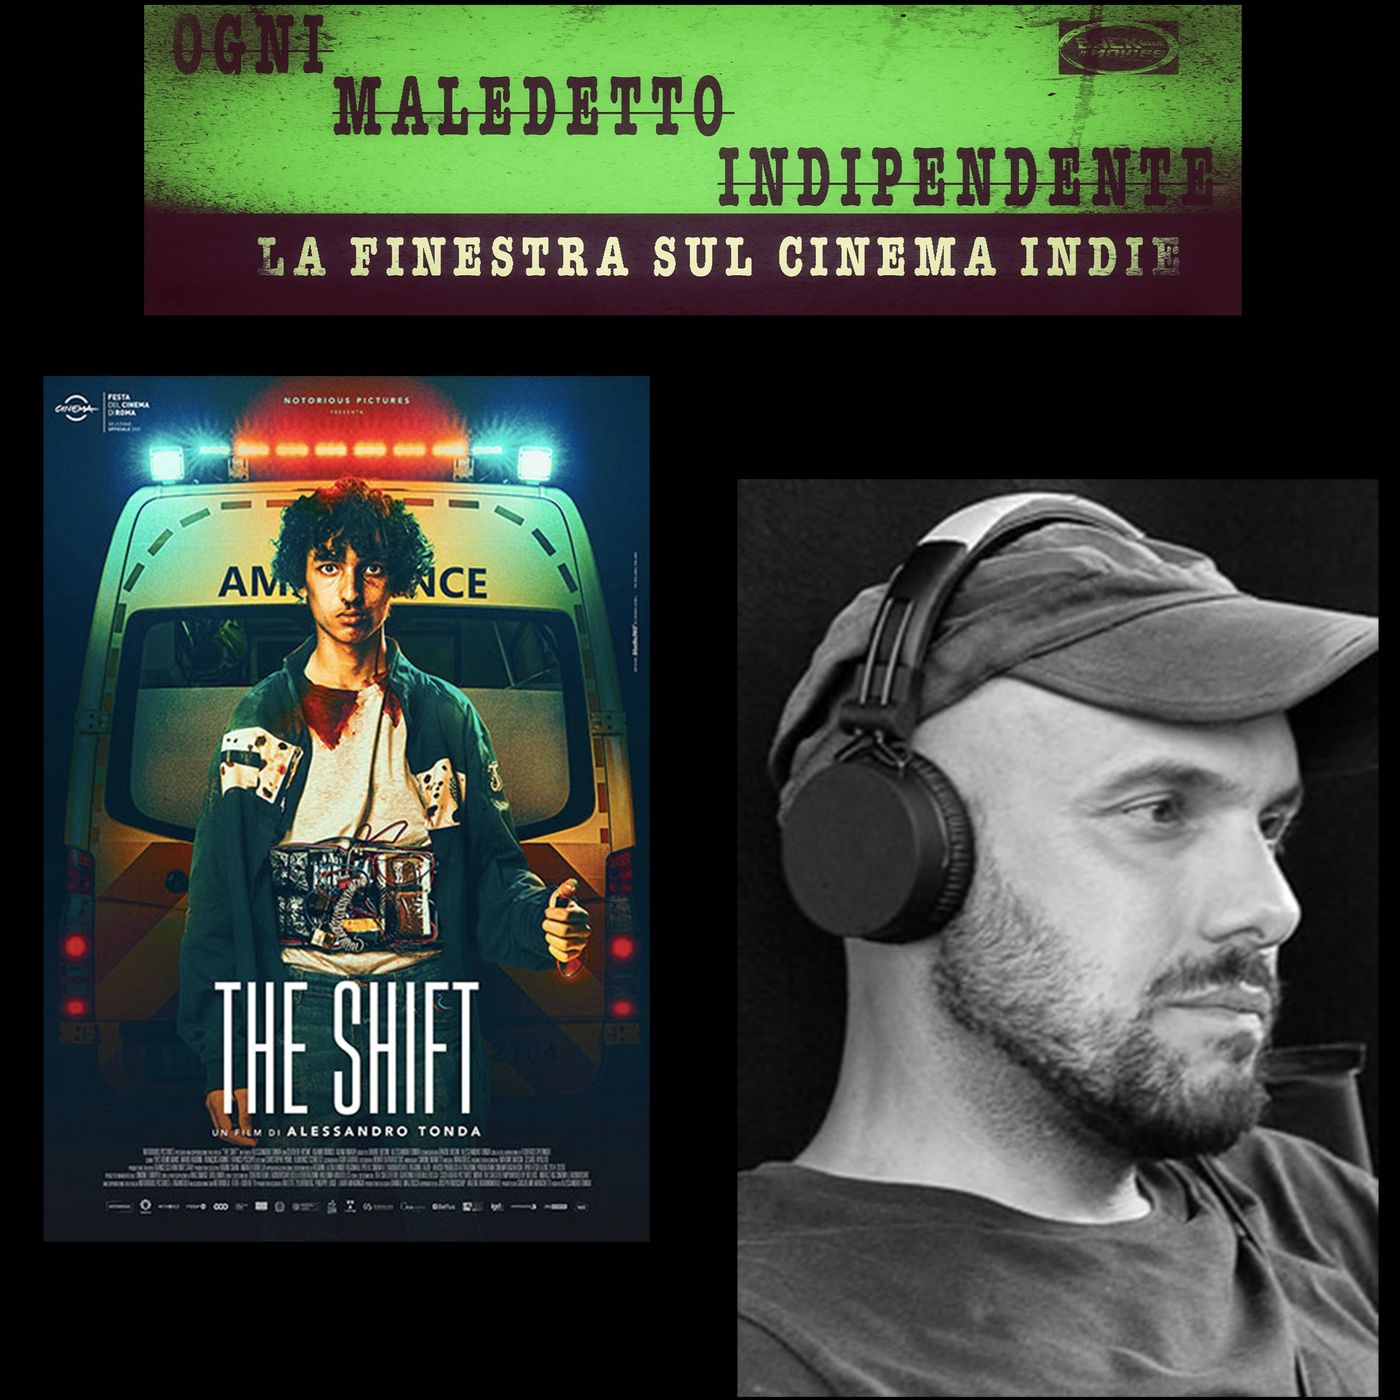 The Shift, un thriller serrato, coinvolgente. Il regista Alessandro Tonda presenta il suo film dal 3 giugno al cinema